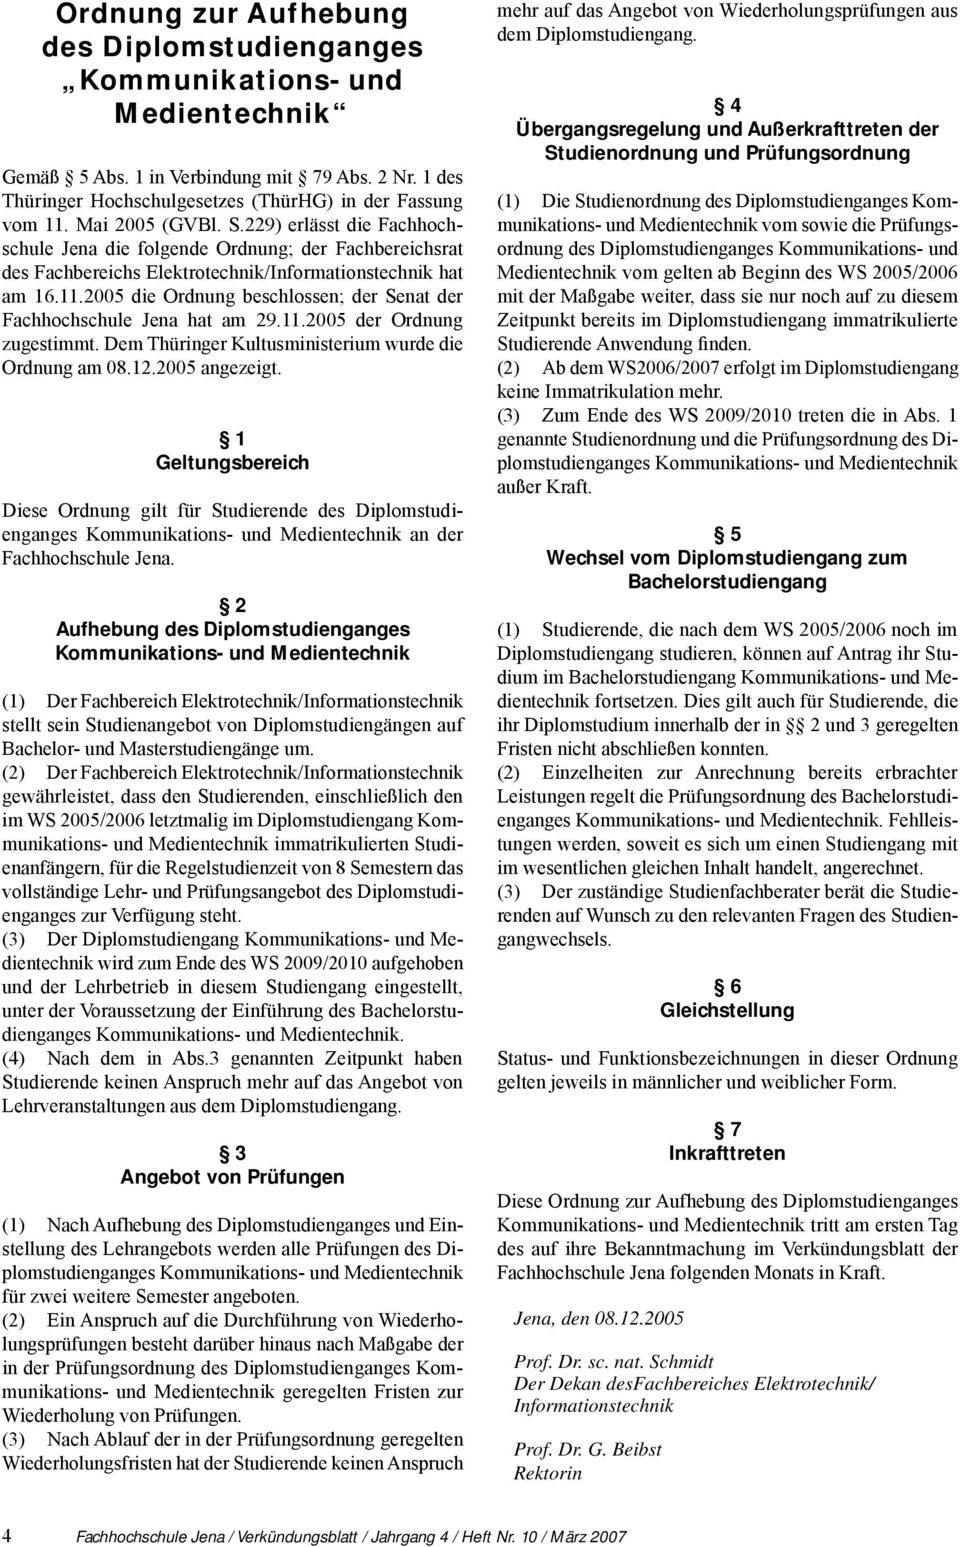 2005 die Ordnung beschlossen; der Senat der Fachhochschule Jena hat am 29.11.2005 der Ordnung zugestimmt. Dem Thüringer Kultusministerium wurde die Ordnung am 08.12.2005 angezeigt.